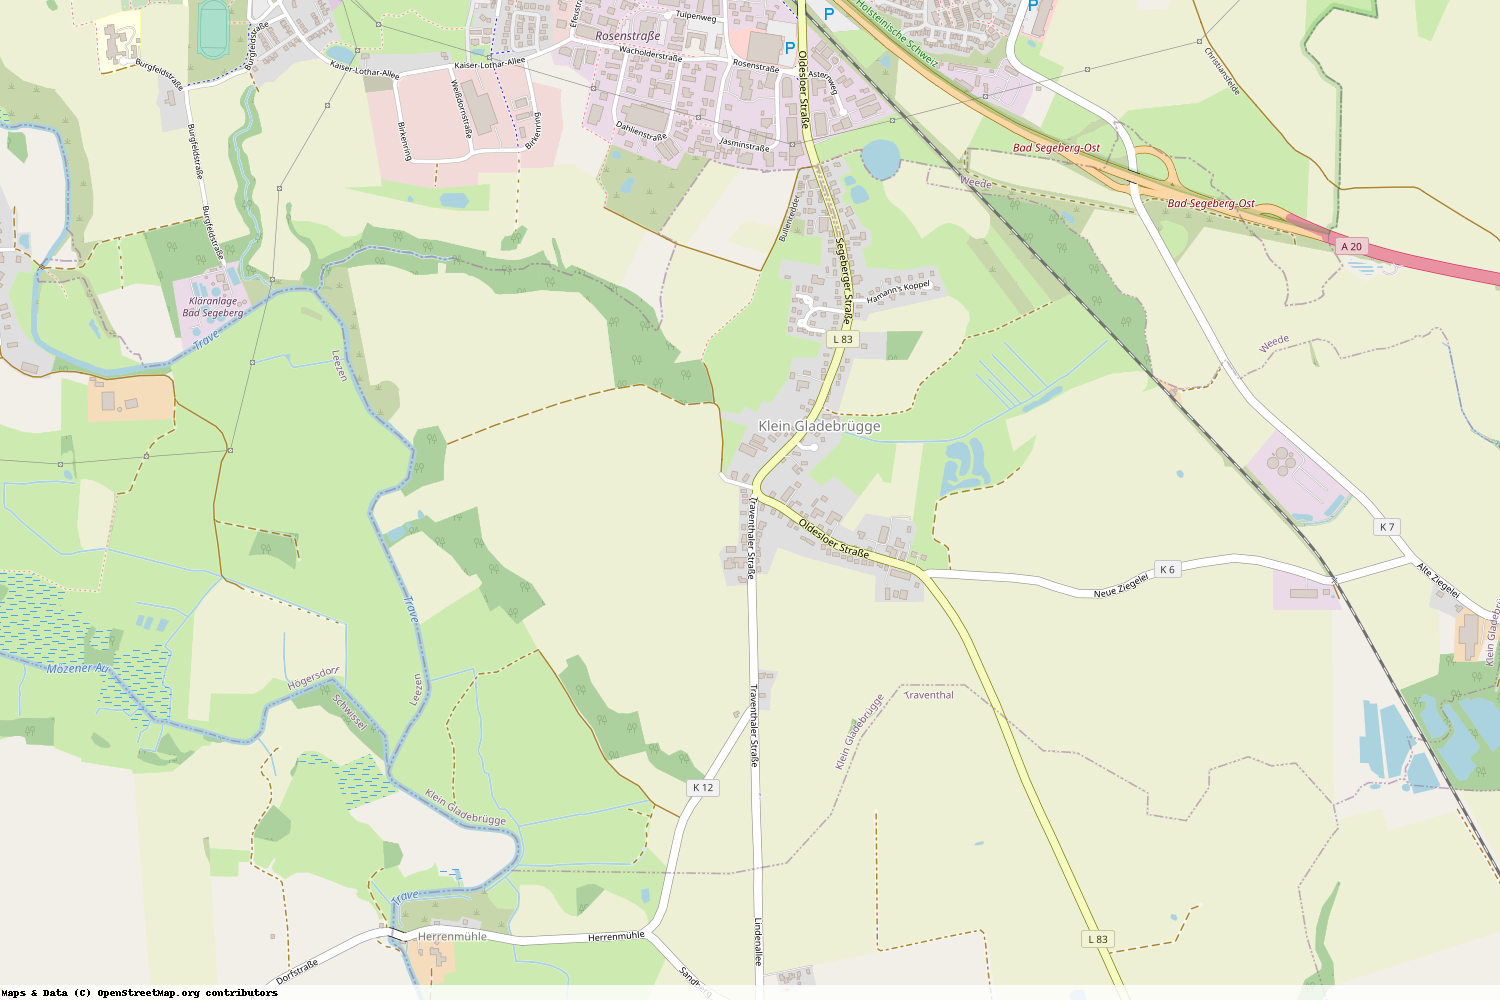 Ist gerade Stromausfall in Schleswig-Holstein - Segeberg - Klein Gladebrügge?